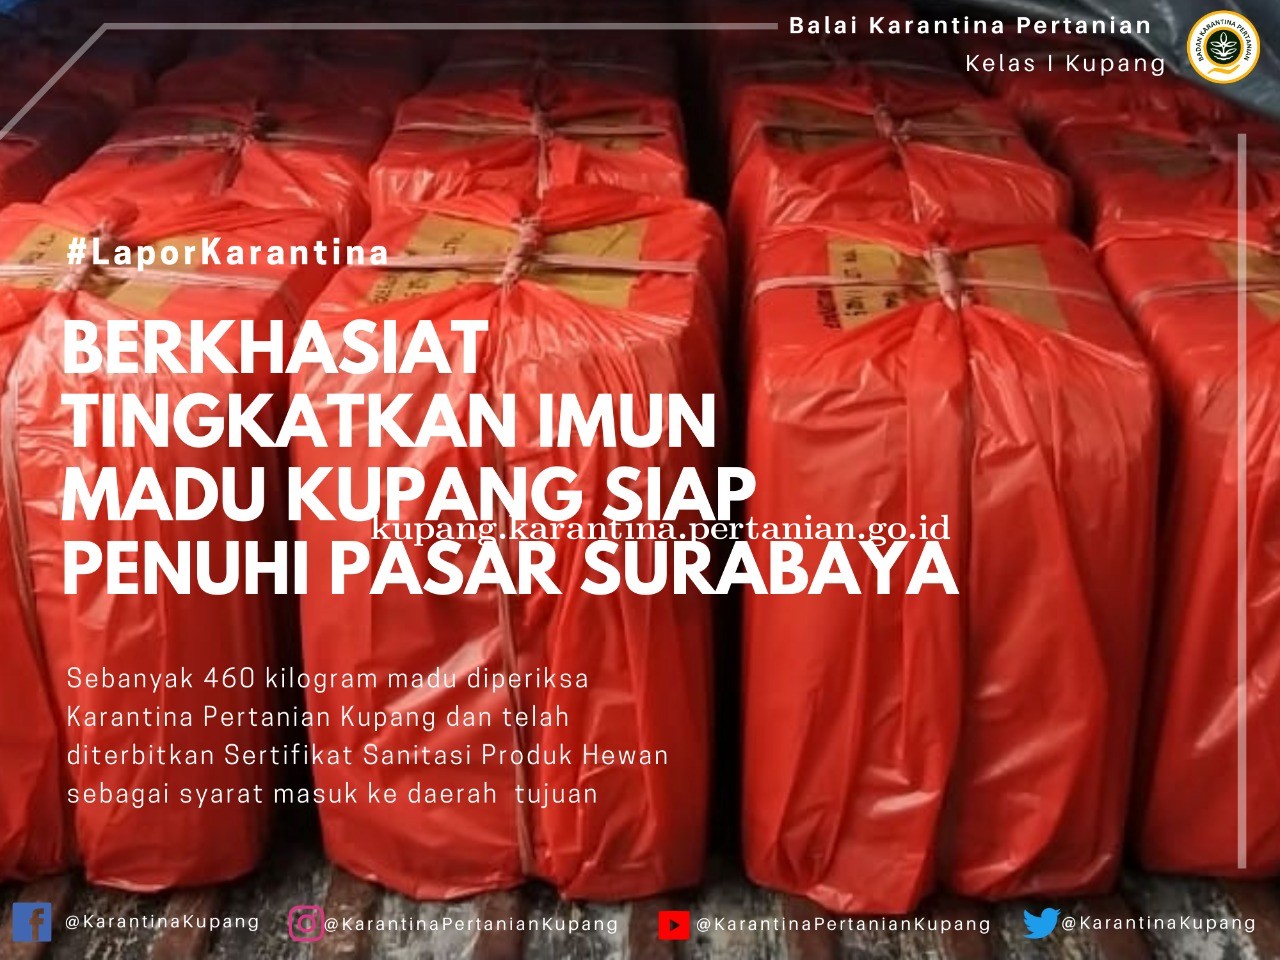 Berkhasiat Meningkatkan Imun, Madu Kupang Penuhi Stok Kebutuhan Pasar Surabaya